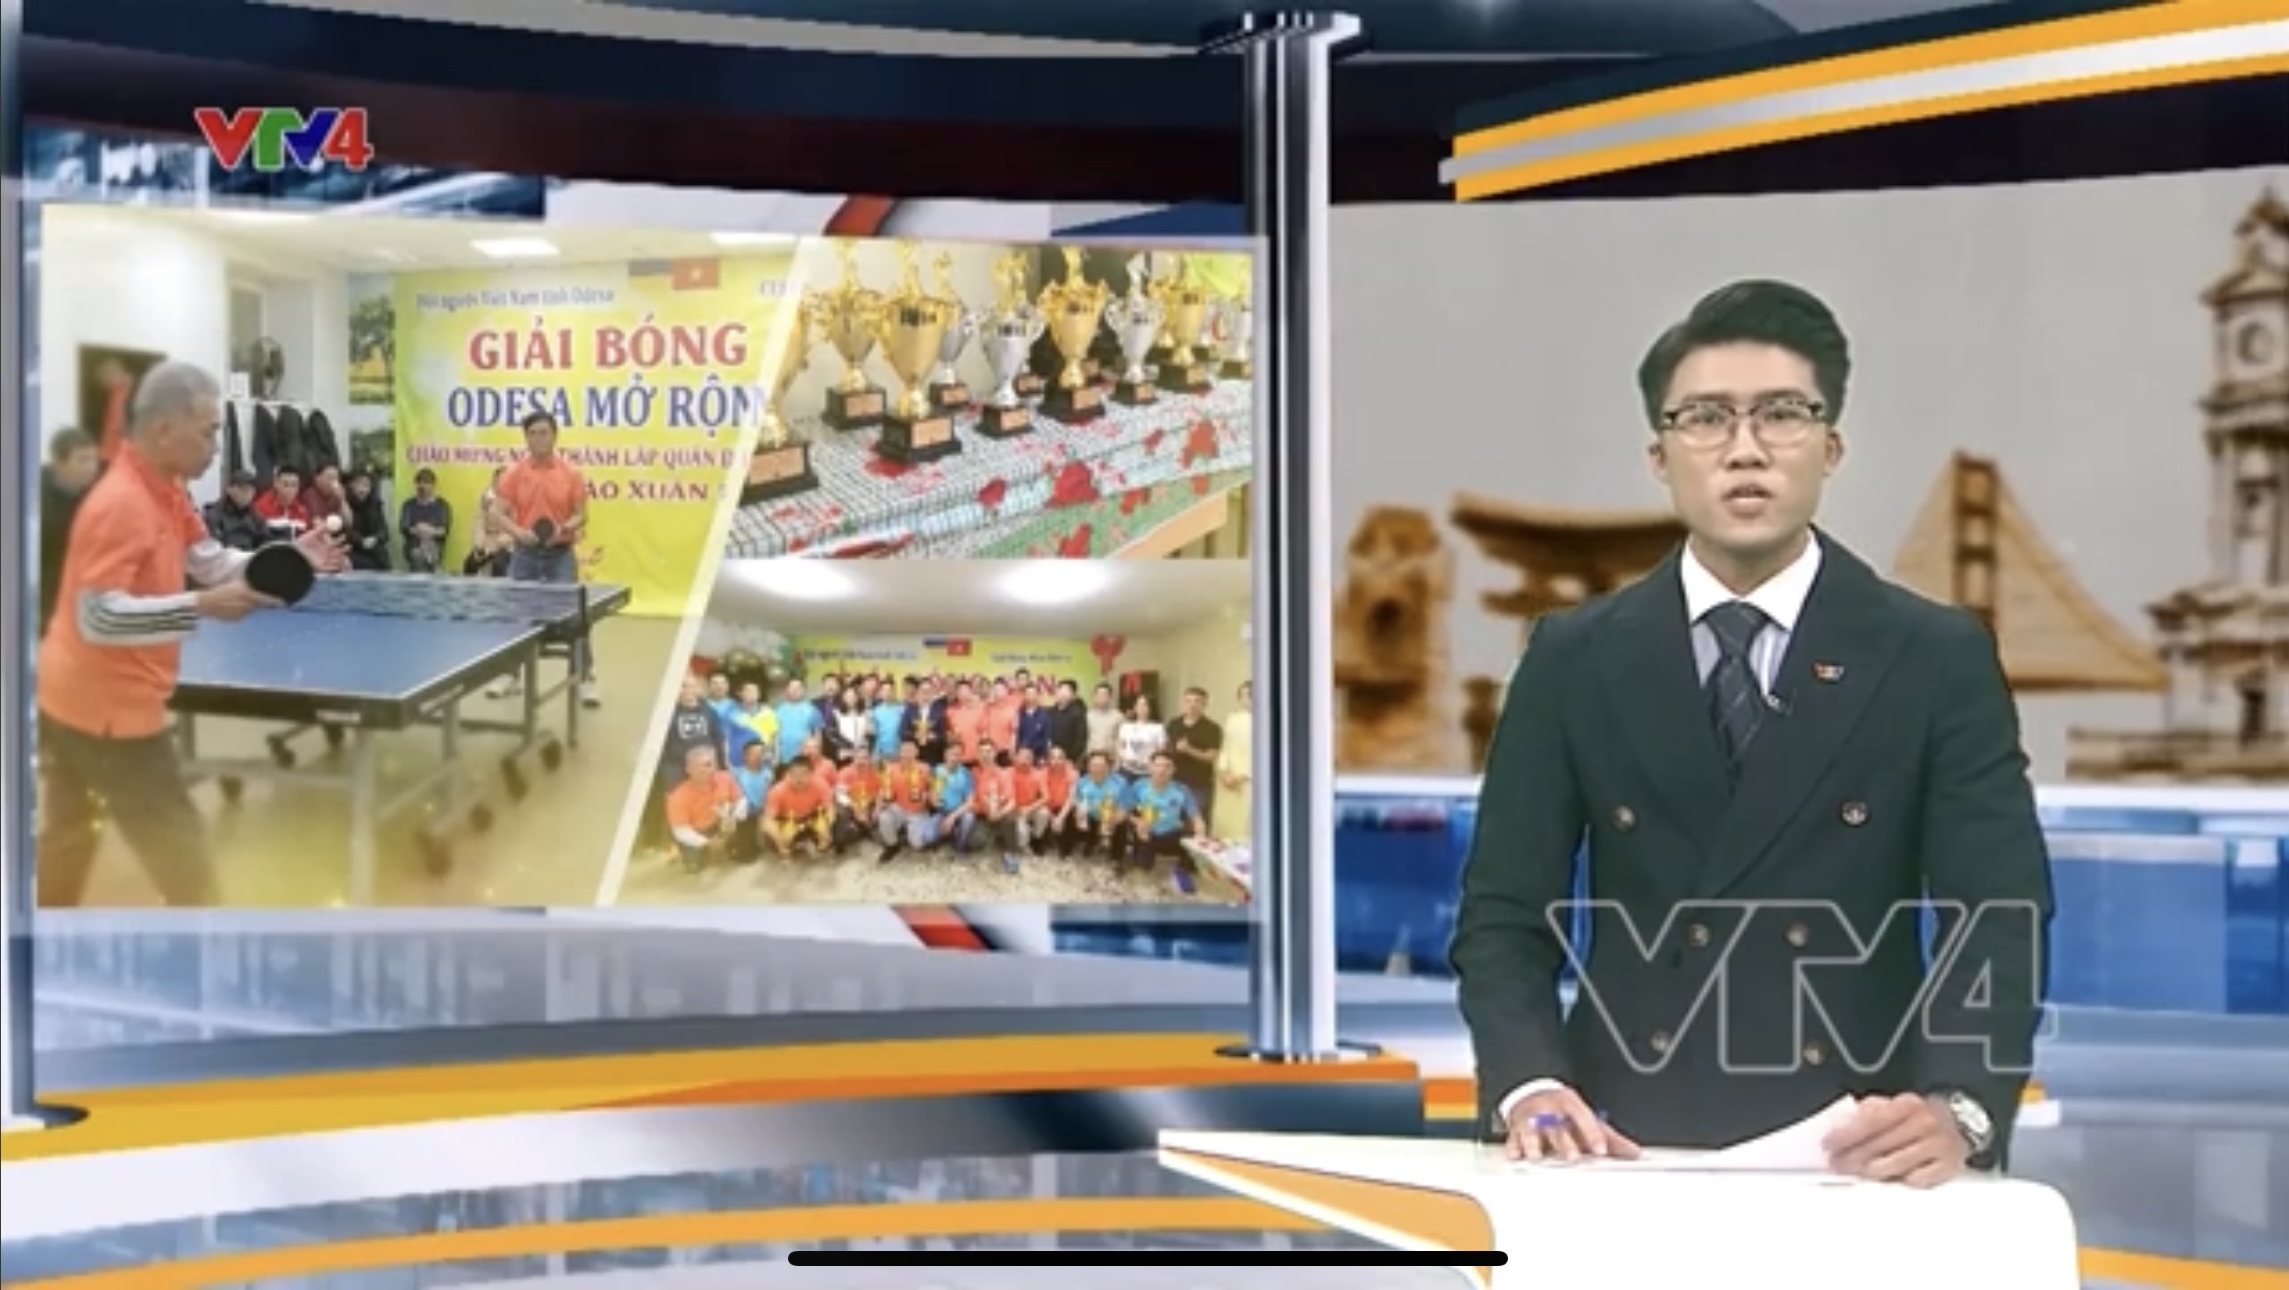 Phóng sự VTV4: Cộng đồng người Việt Nam thành phố Odessa tổ chức giải bóng bàn Odessa mở rộng năm 2023